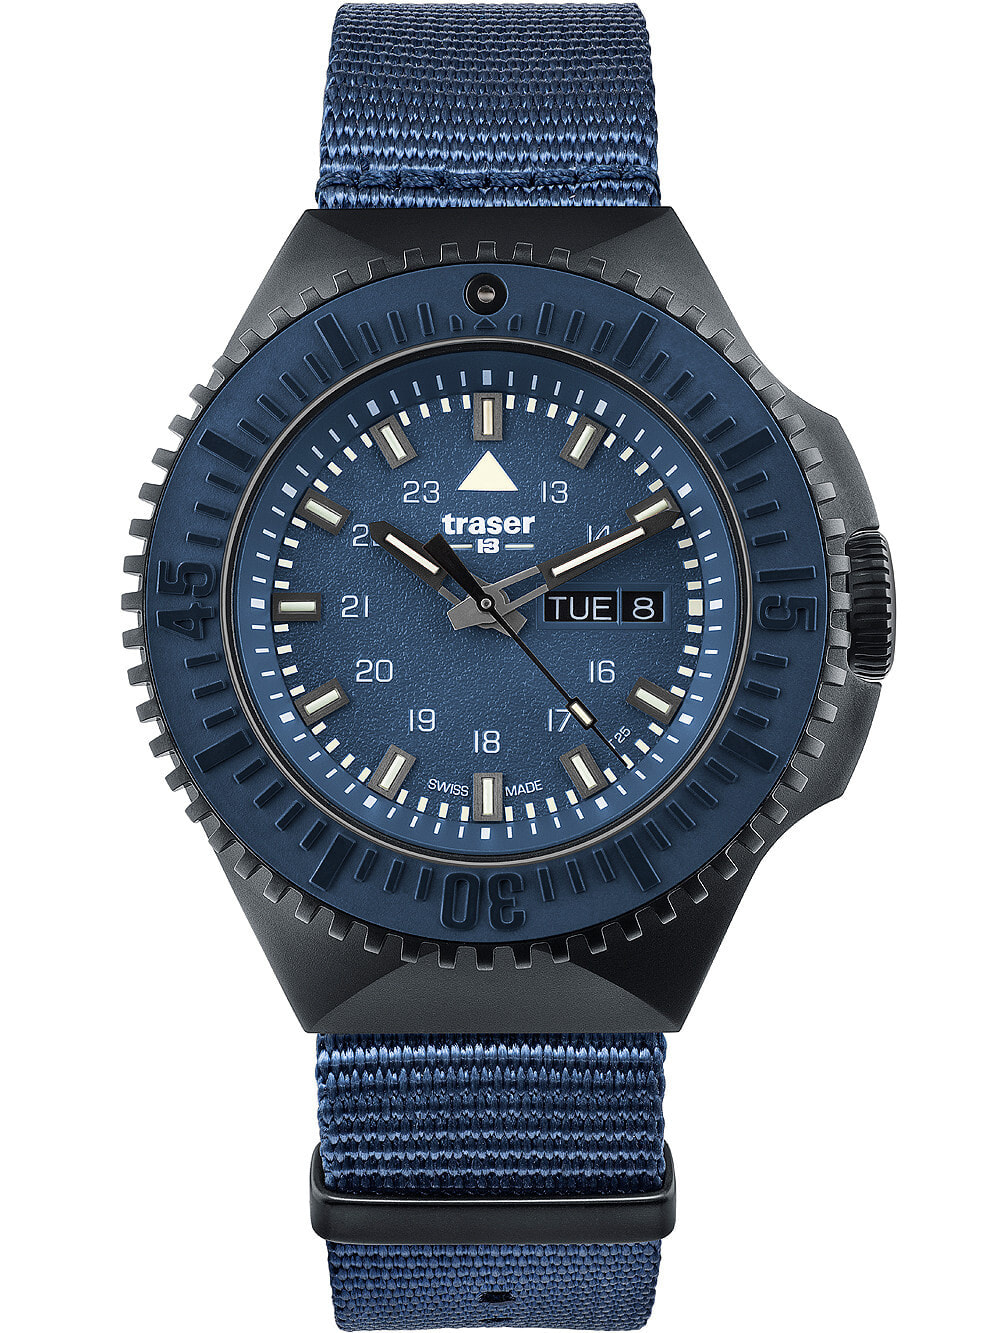 Мужские наручные часы с синим текстильным ремешком Traser H3 109856 P69 Black-Stealth Blue 46mm 20ATM